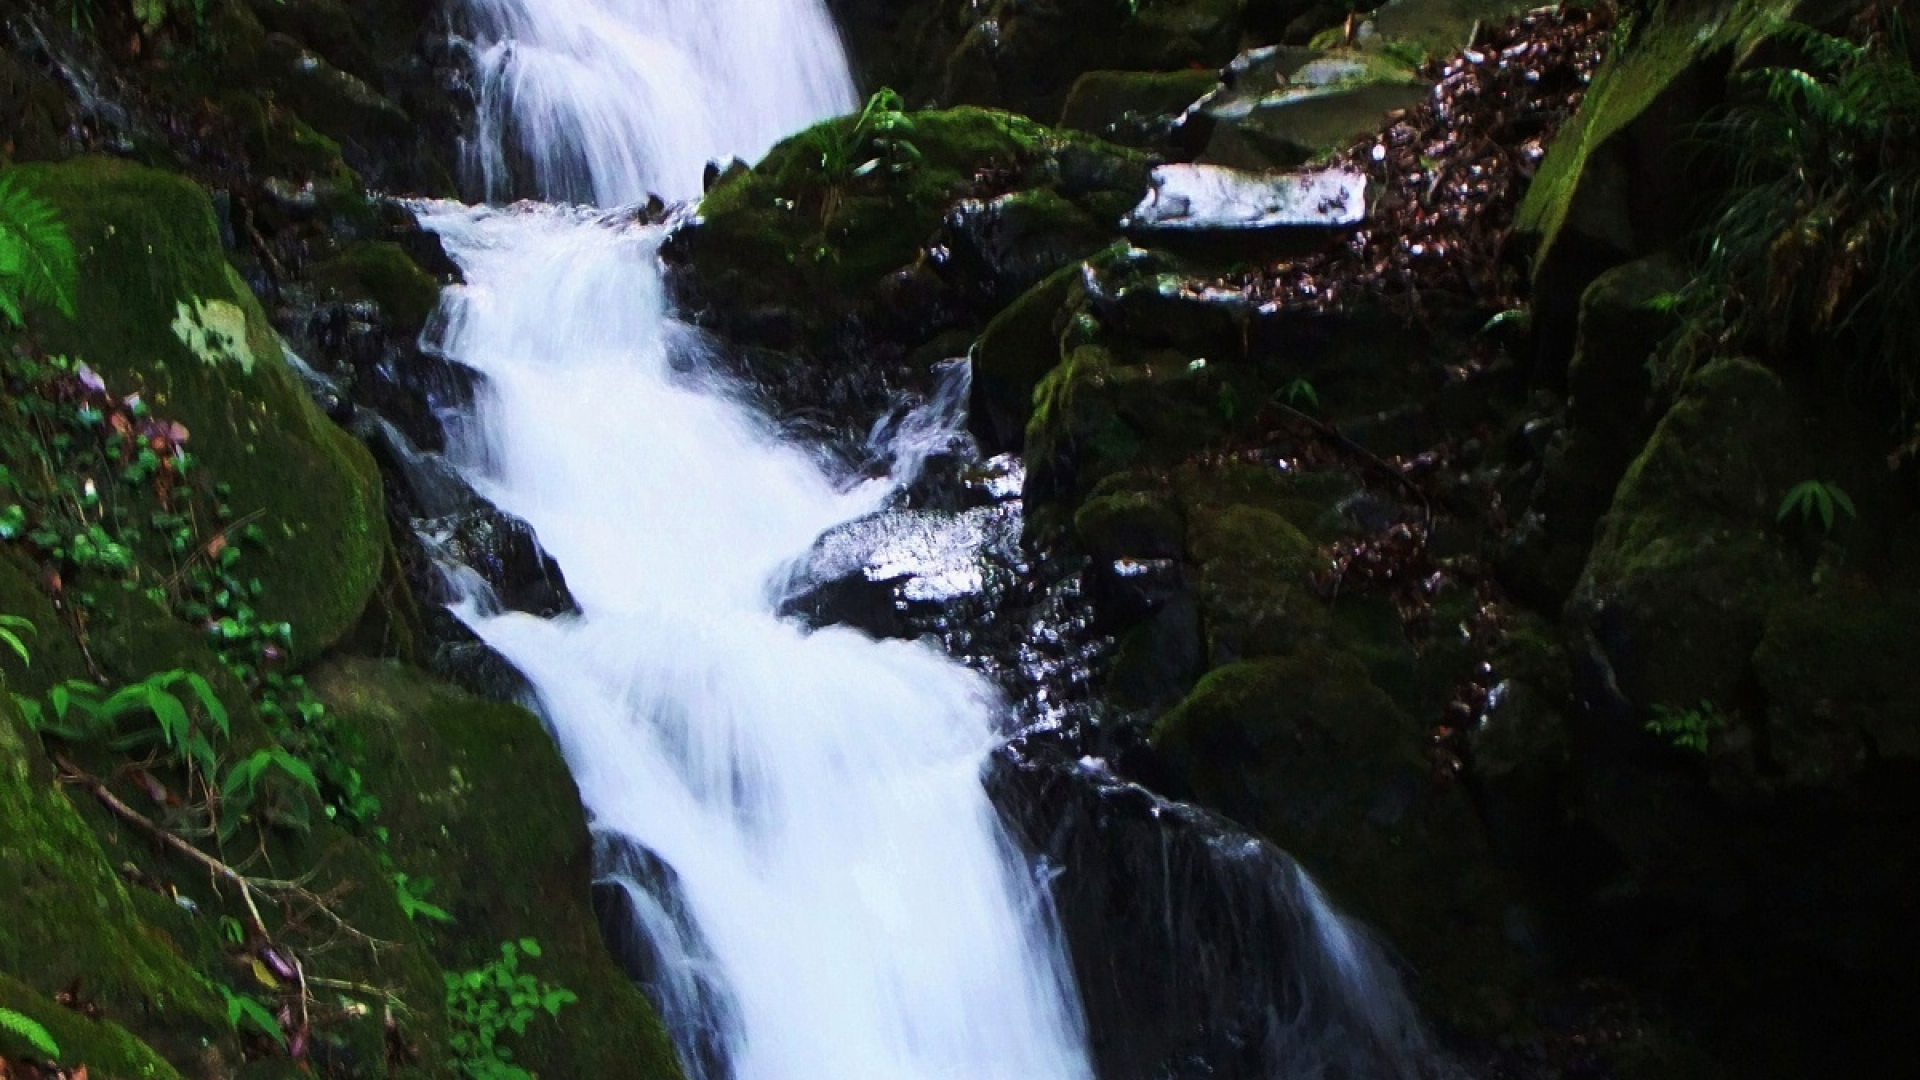 Kyorai Waterfall